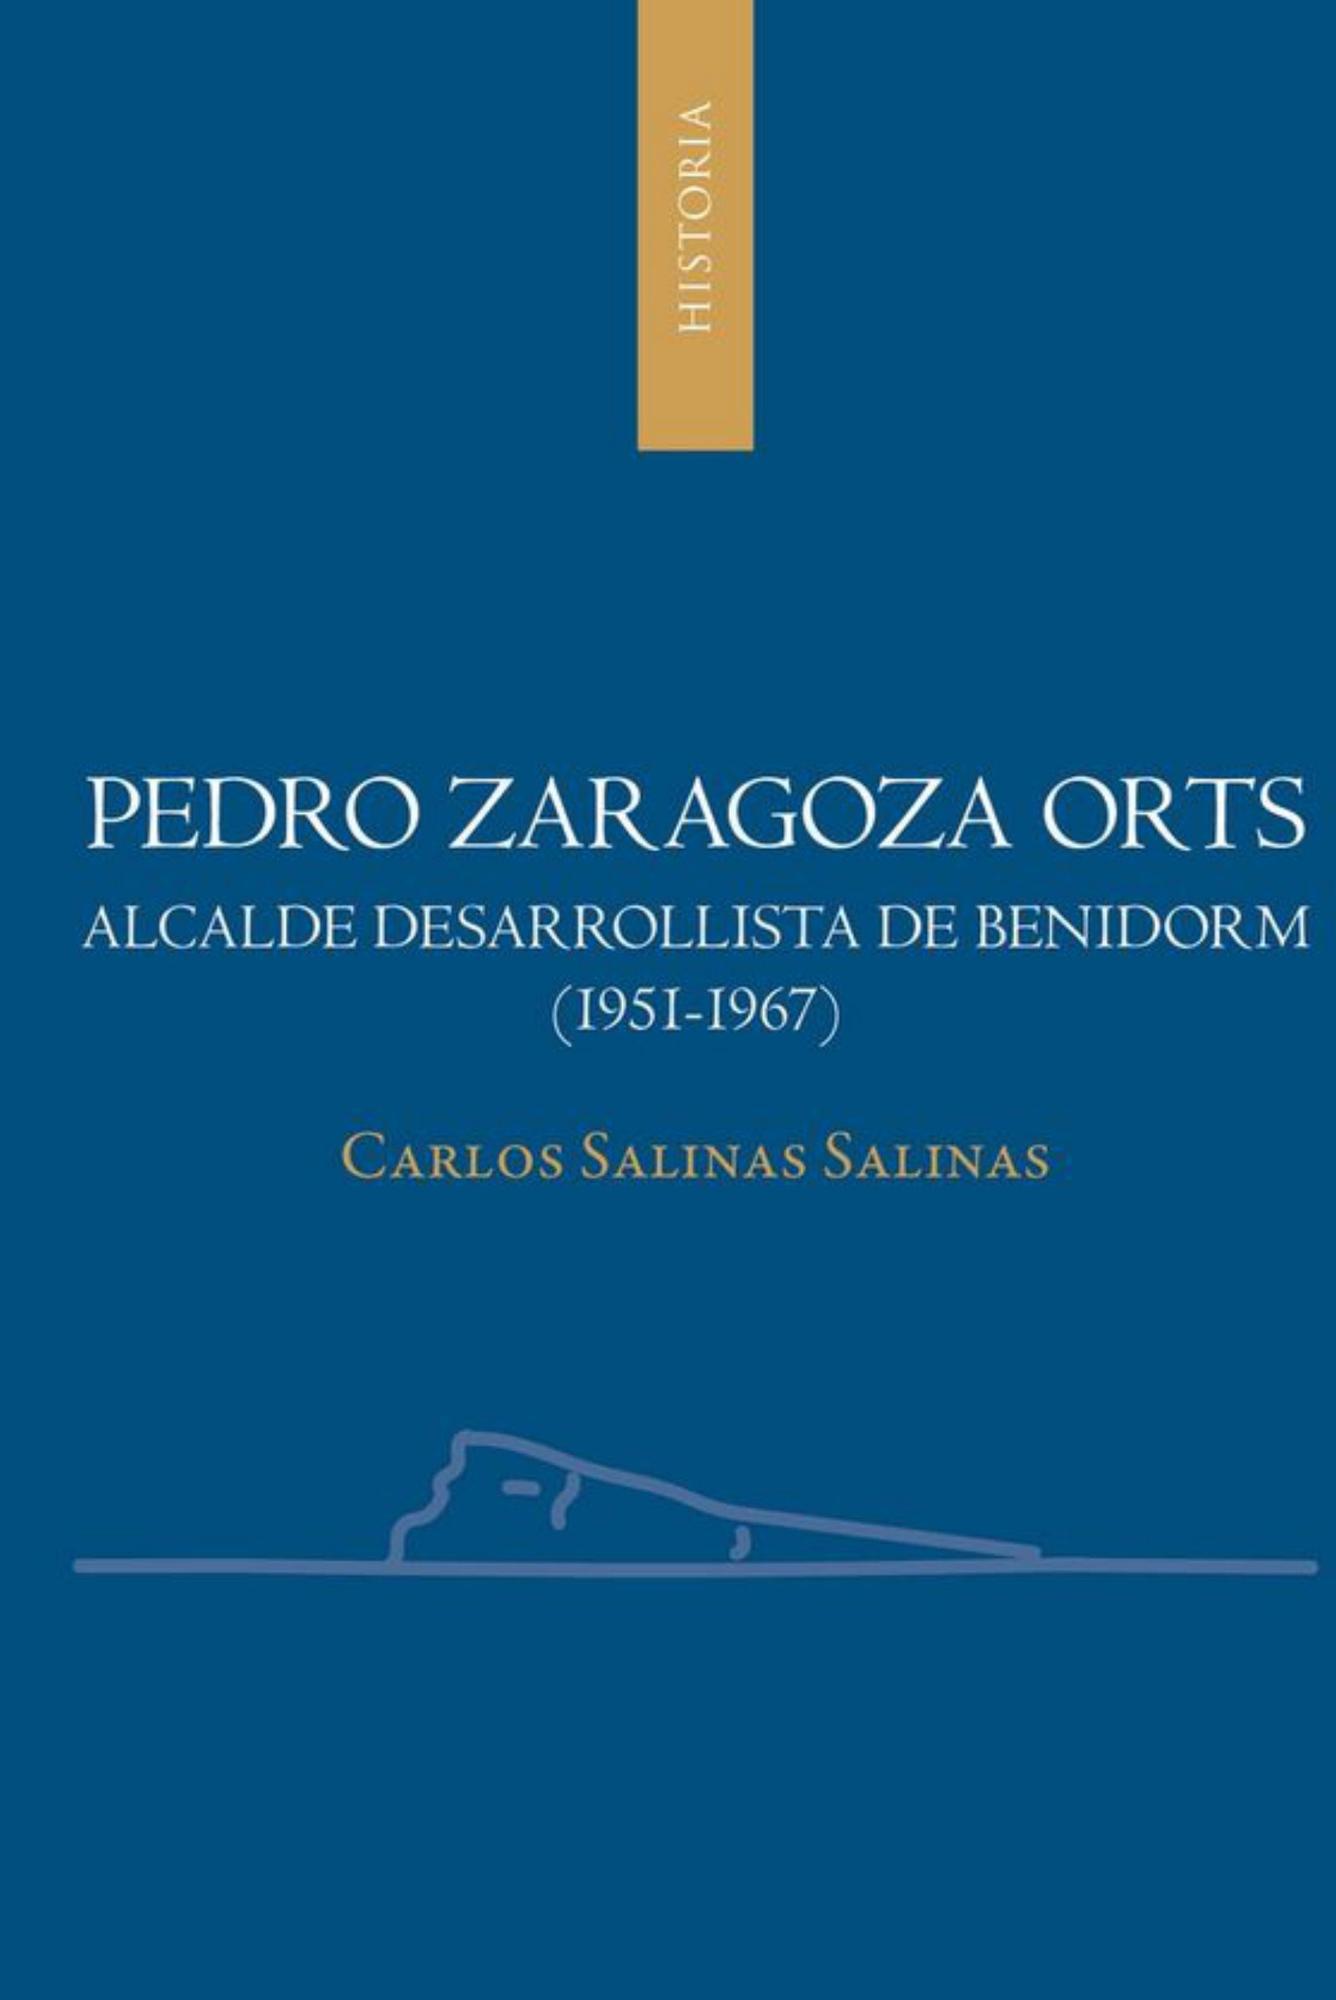 Carlos Salinas Salinas  Pedro Zaragoza Orts, alcalde desarrollista de Benidorm (1951-1967)   Universidad de Alicante, 2022